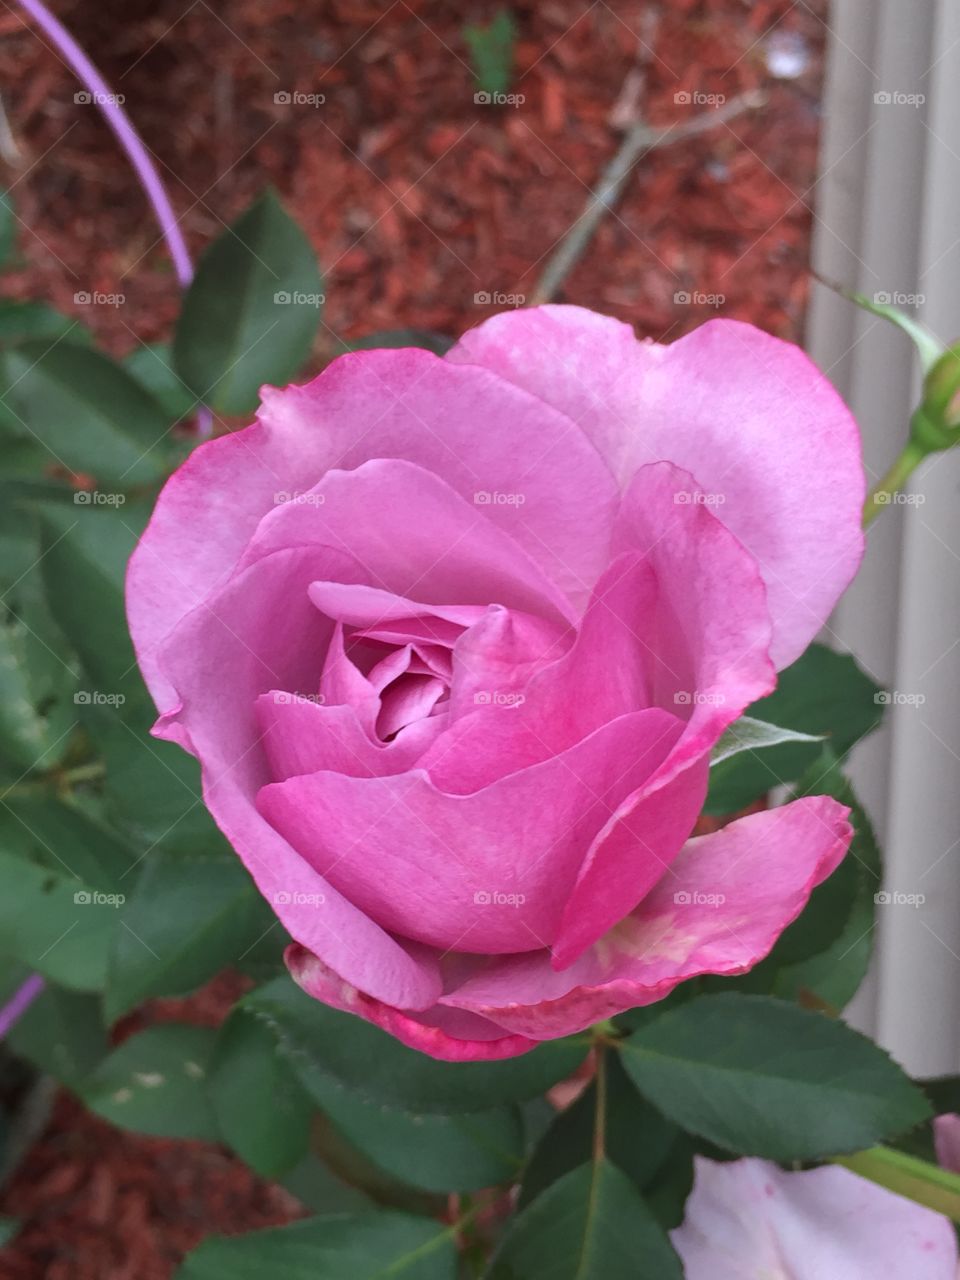 A pretty pink rose, in close up